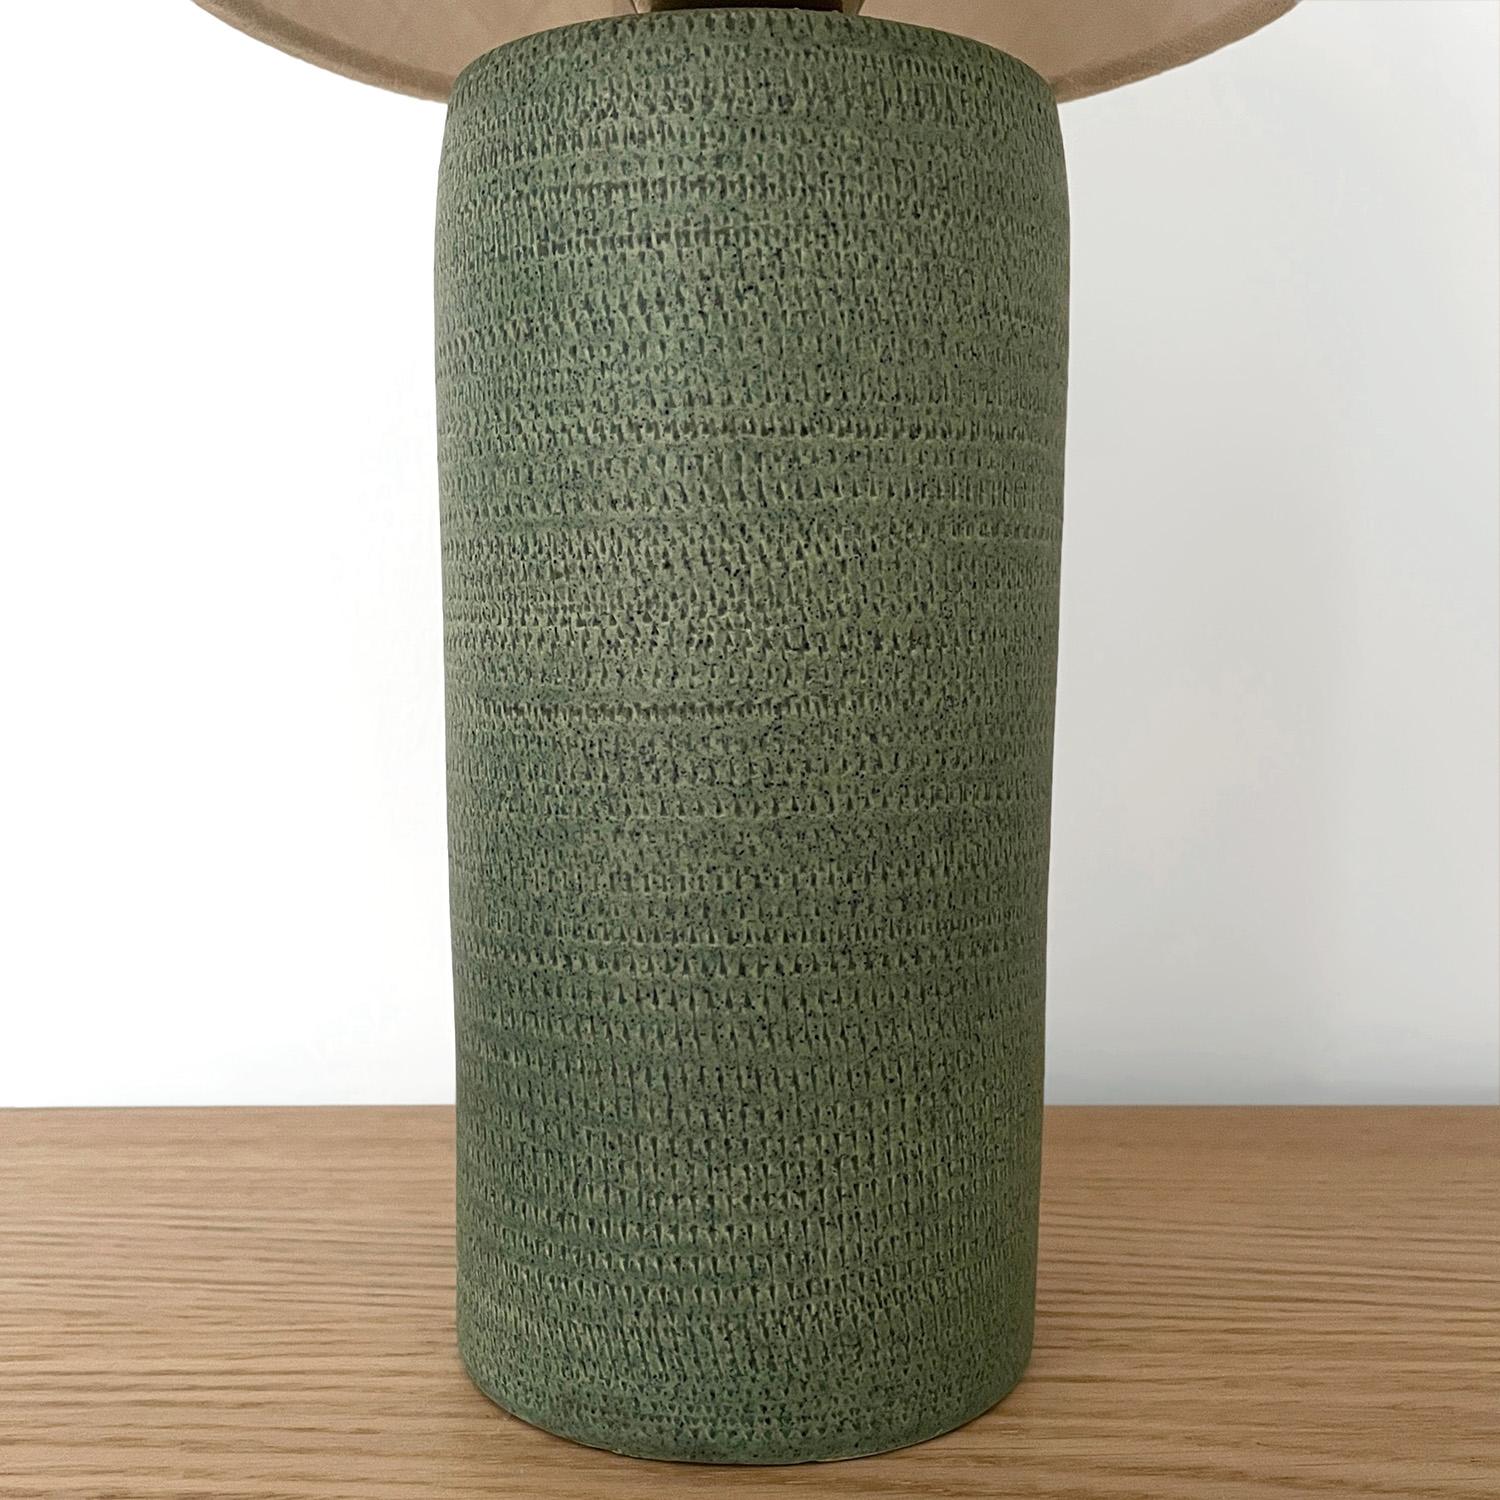 Aldo Londi Italian Green Ceramic Table Lamp  For Sale 1